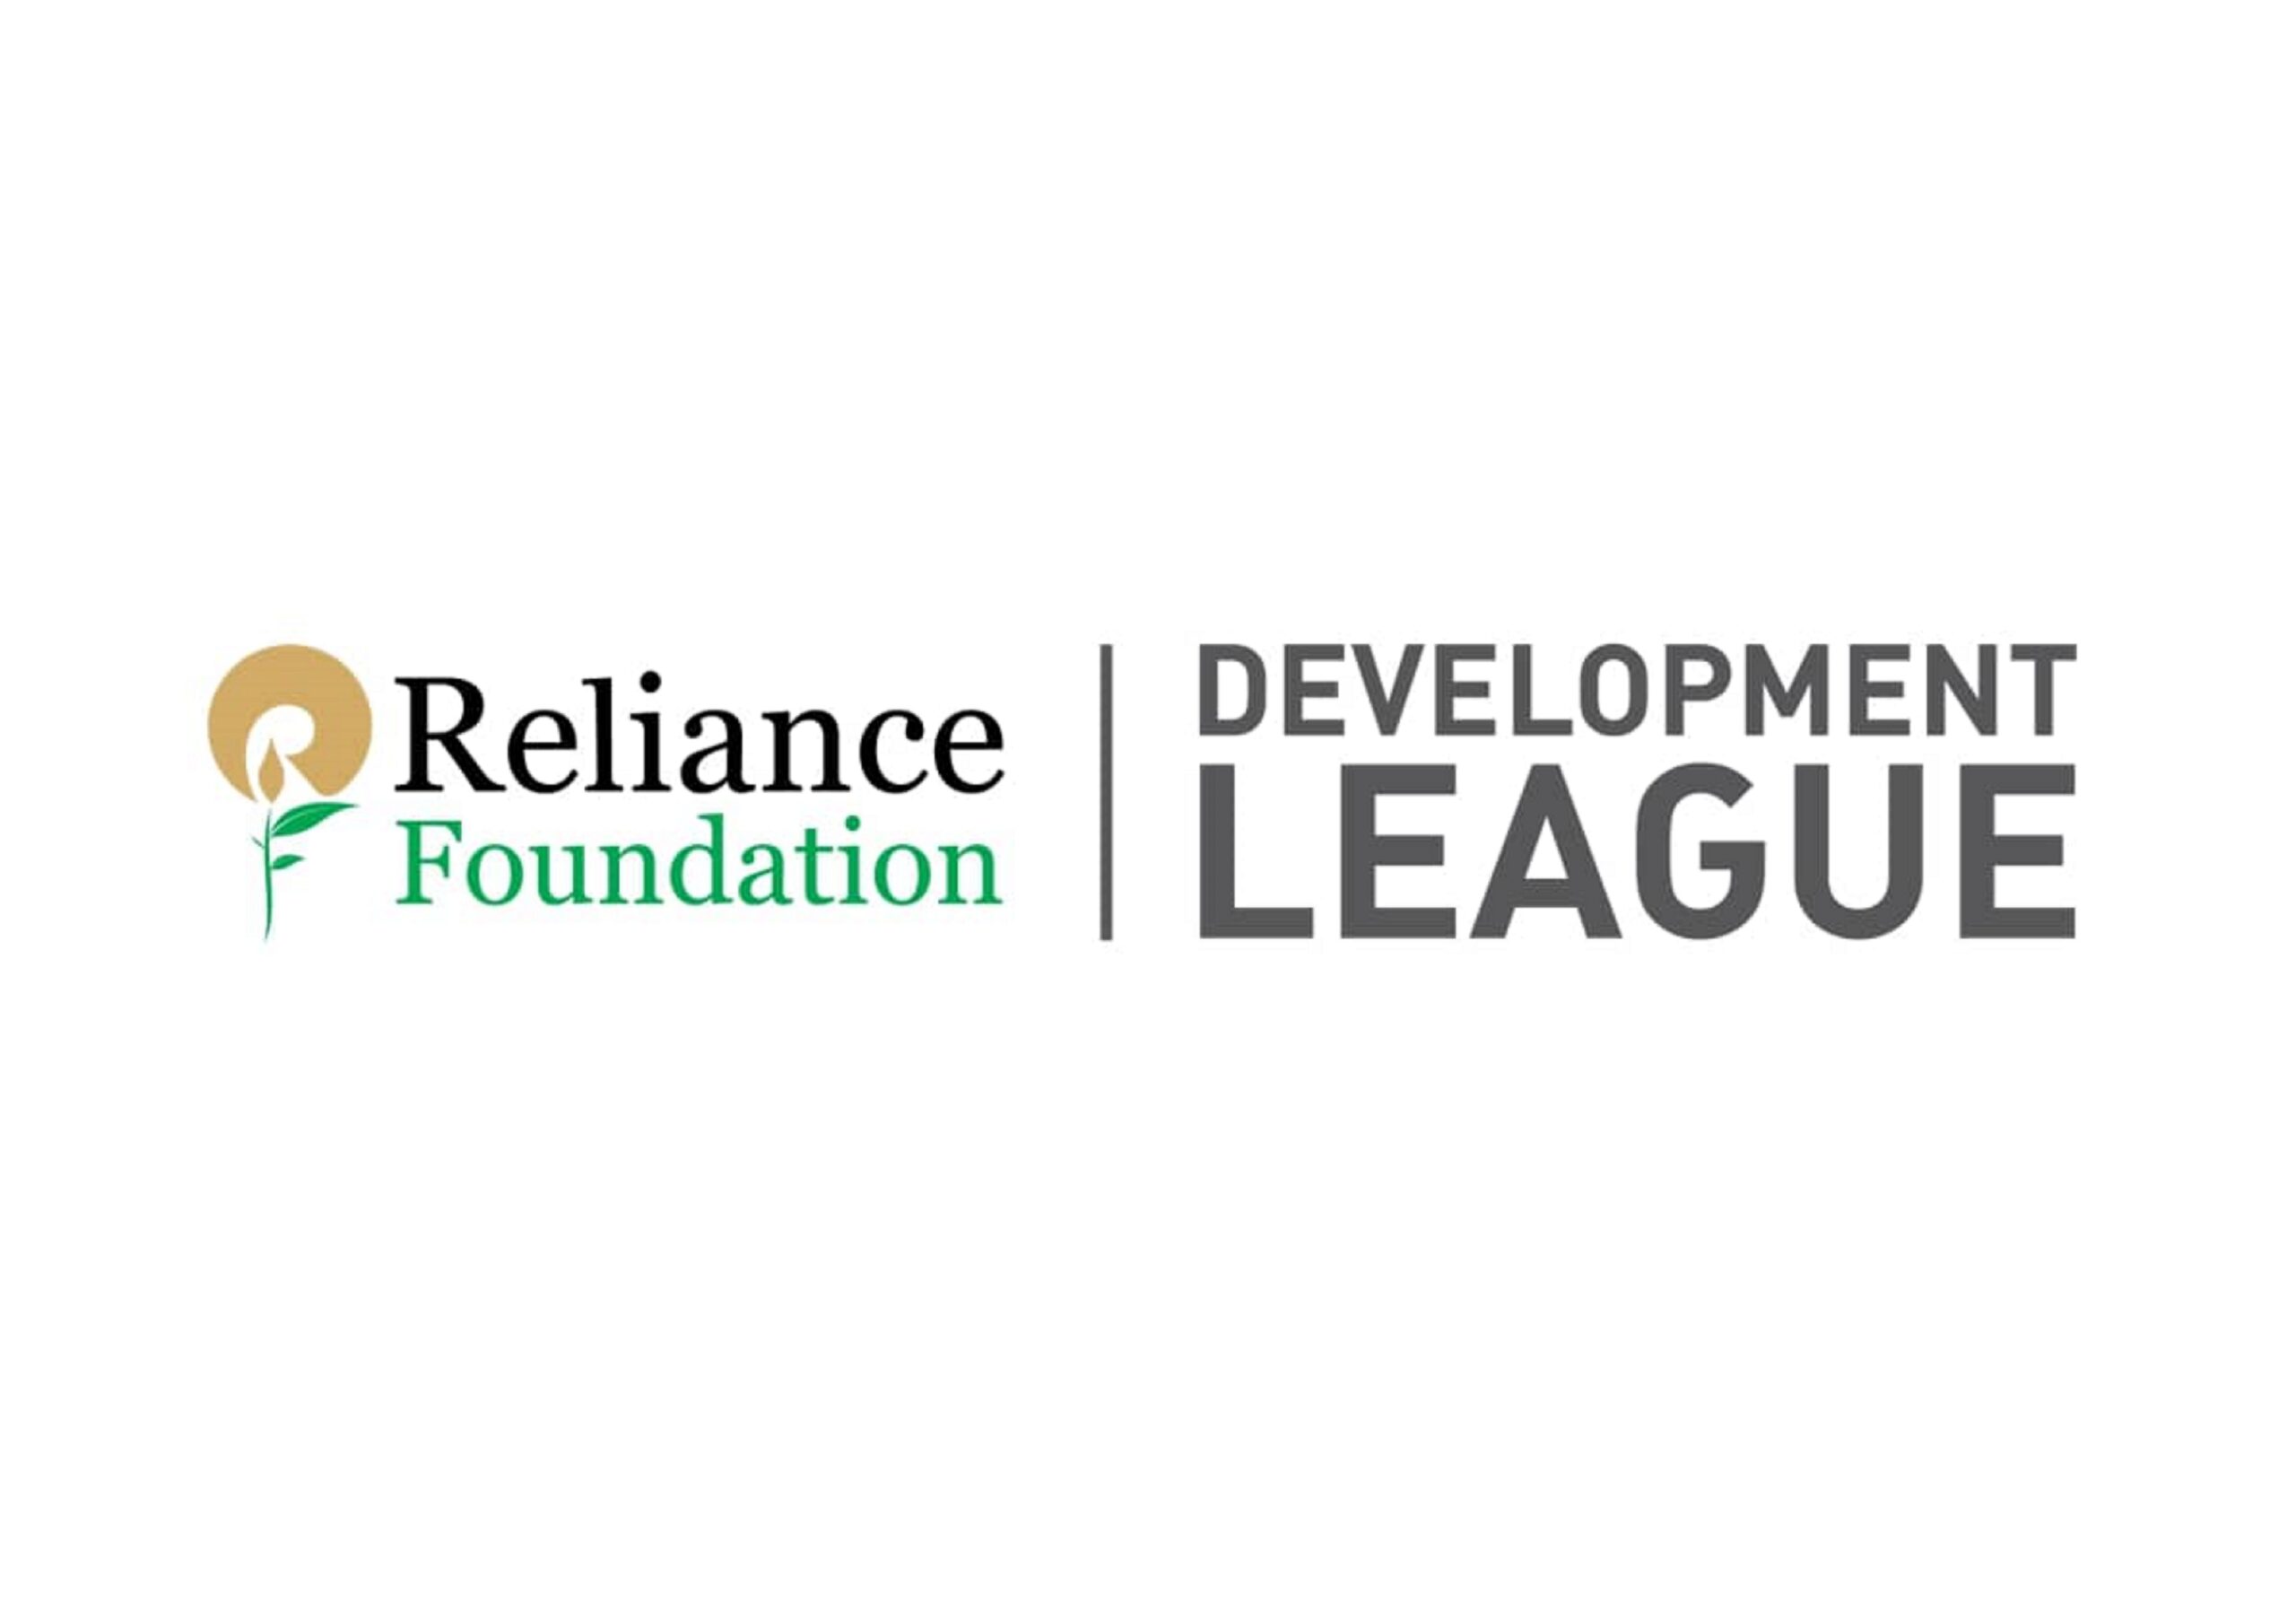 Reliance Foundation Development League